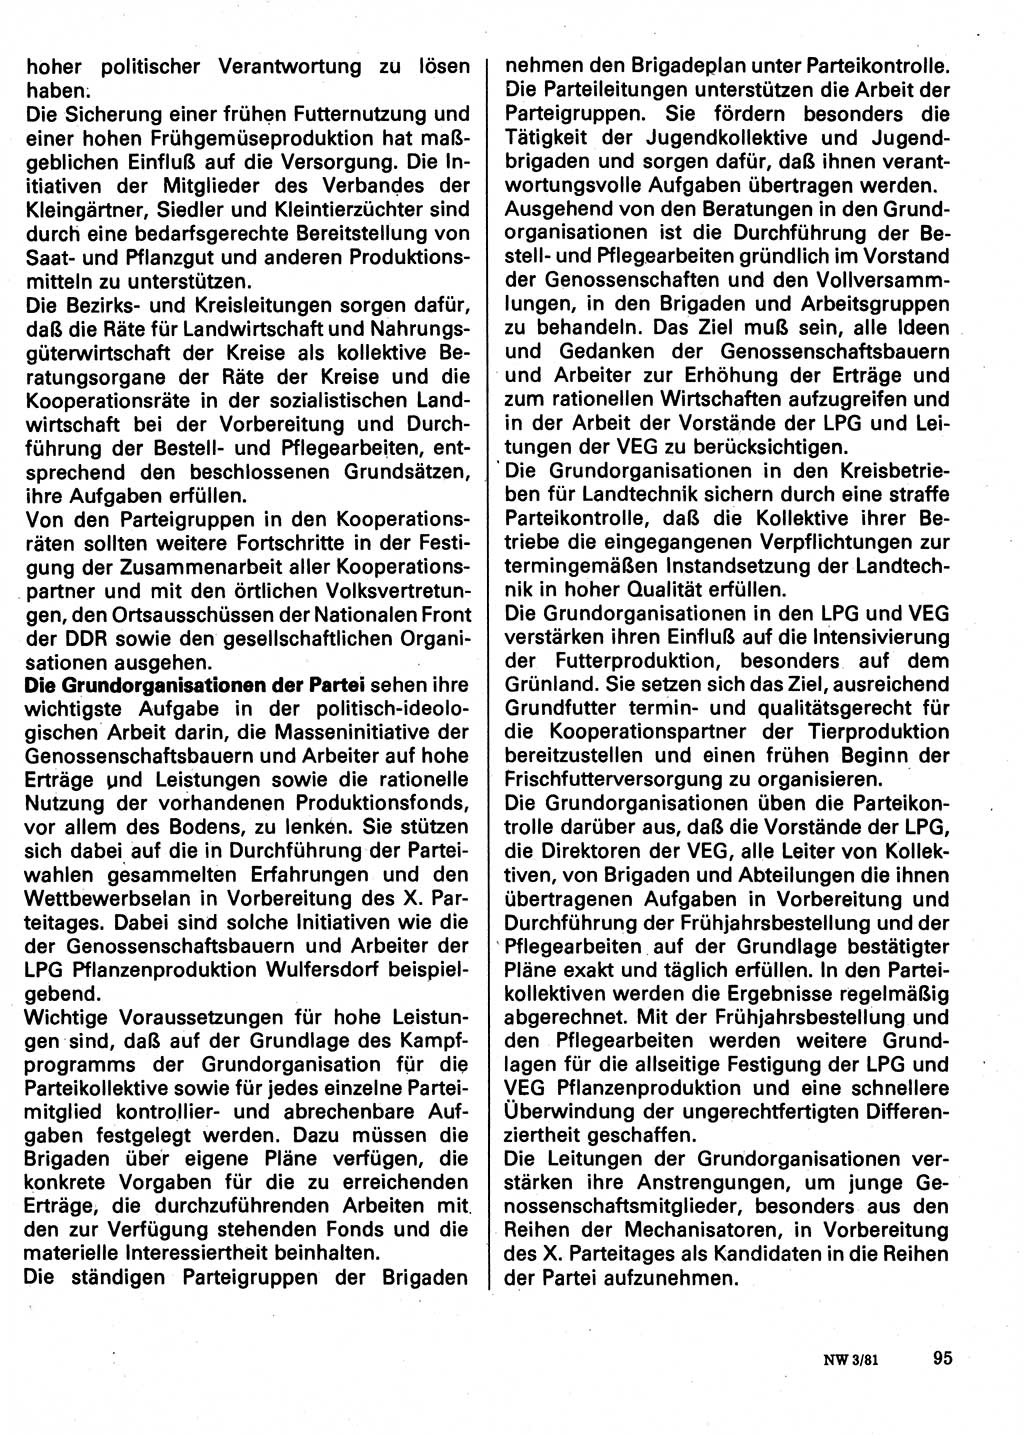 Neuer Weg (NW), Organ des Zentralkomitees (ZK) der SED (Sozialistische Einheitspartei Deutschlands) für Fragen des Parteilebens, 36. Jahrgang [Deutsche Demokratische Republik (DDR)] 1981, Seite 95 (NW ZK SED DDR 1981, S. 95)